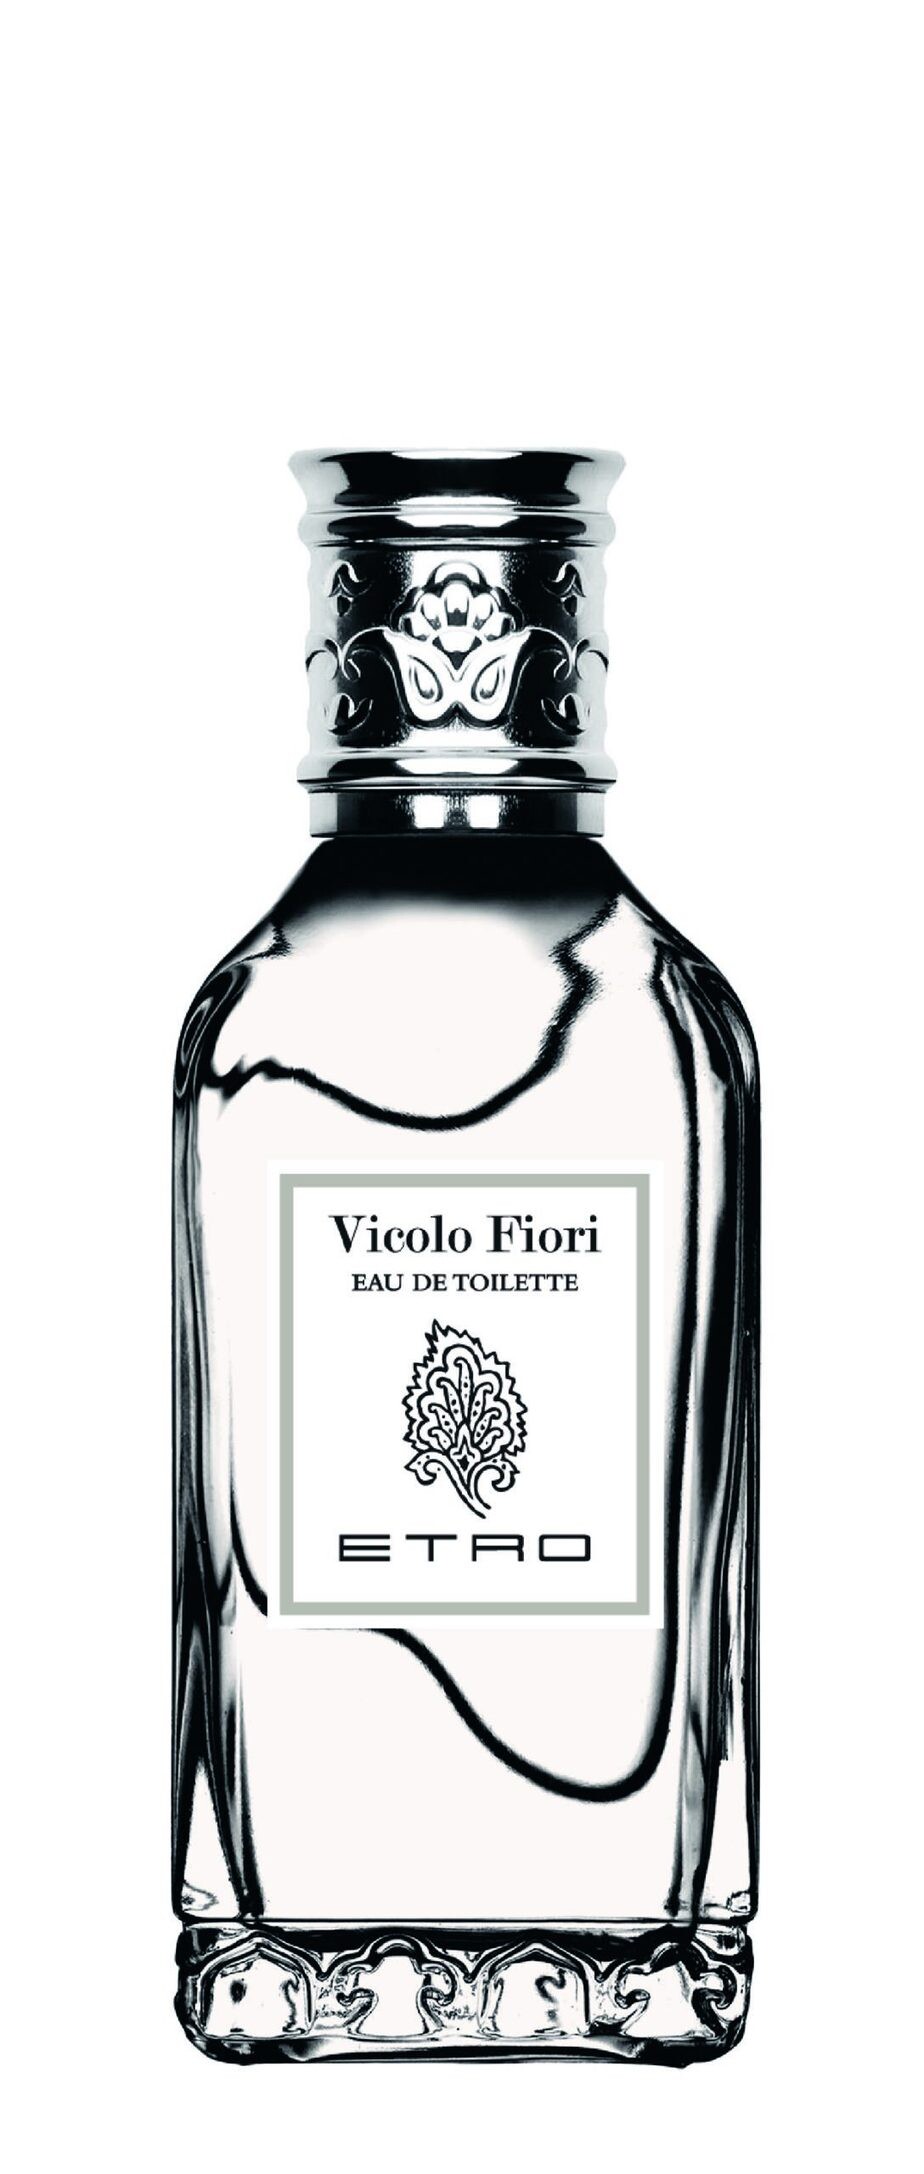 Luxus Parfum ETRO Vicolo Fiori EDT 50ml kaufen